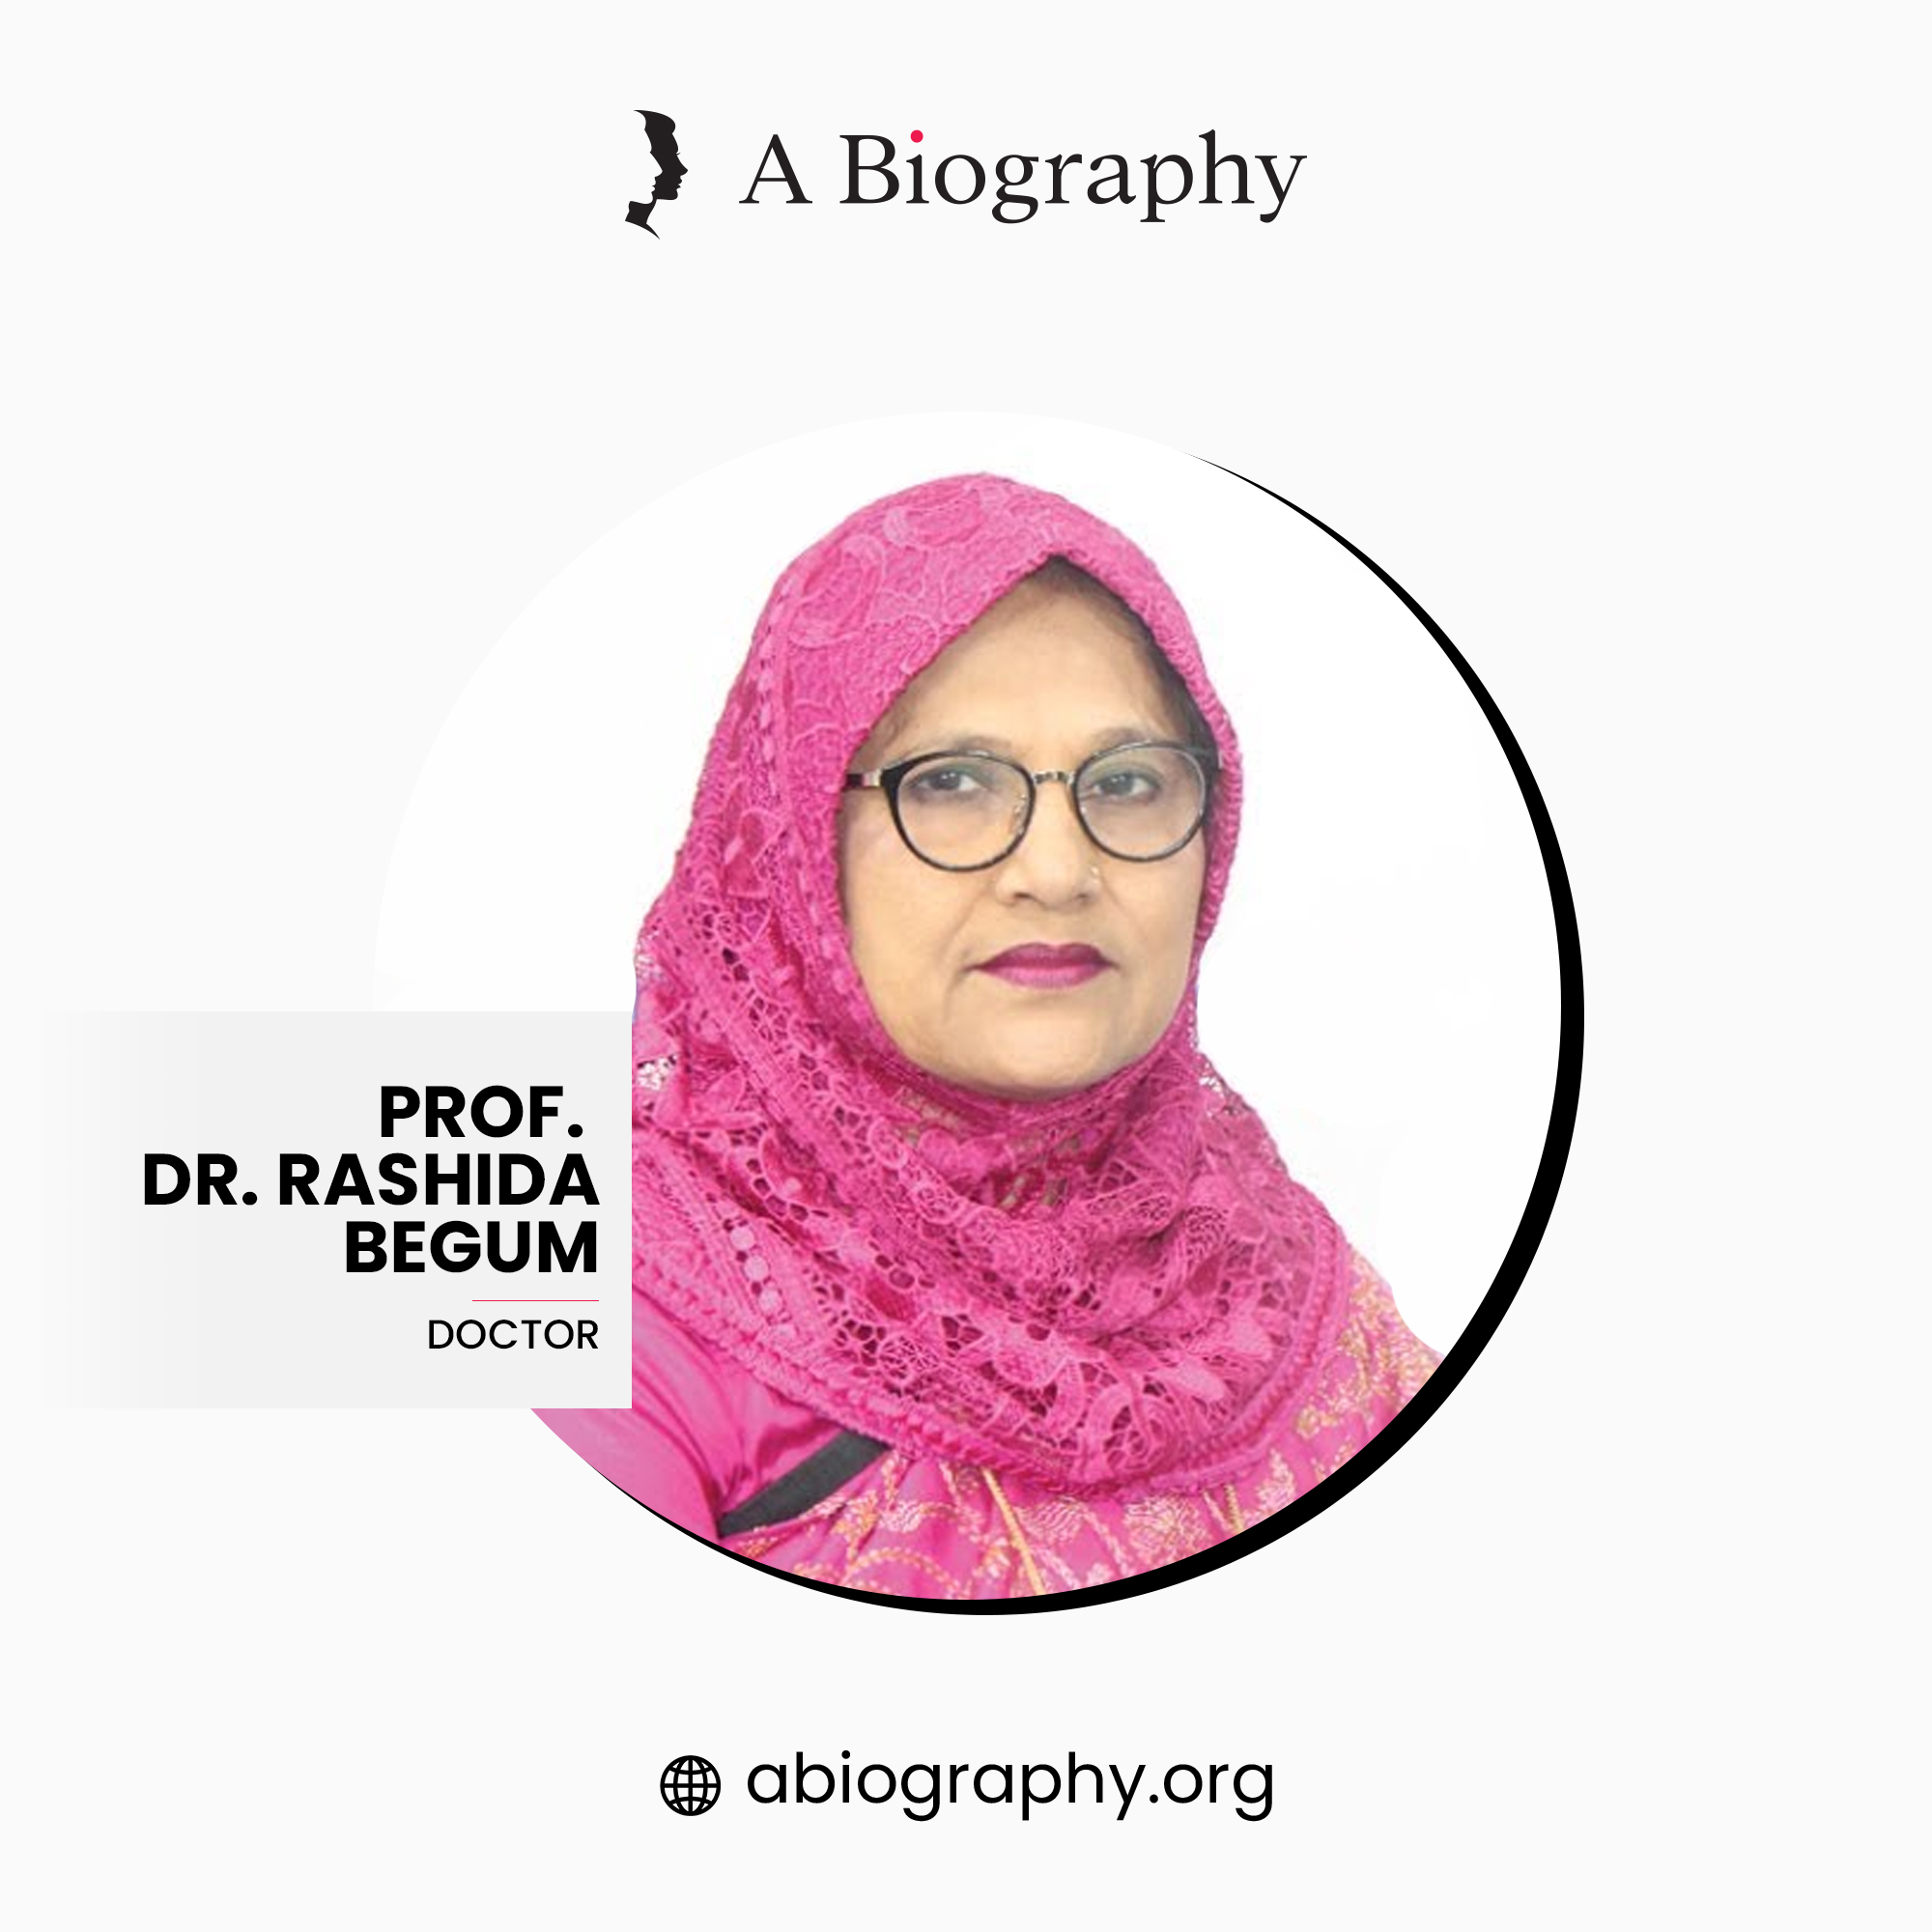 PROF. DR. RASHIDA BEGUM